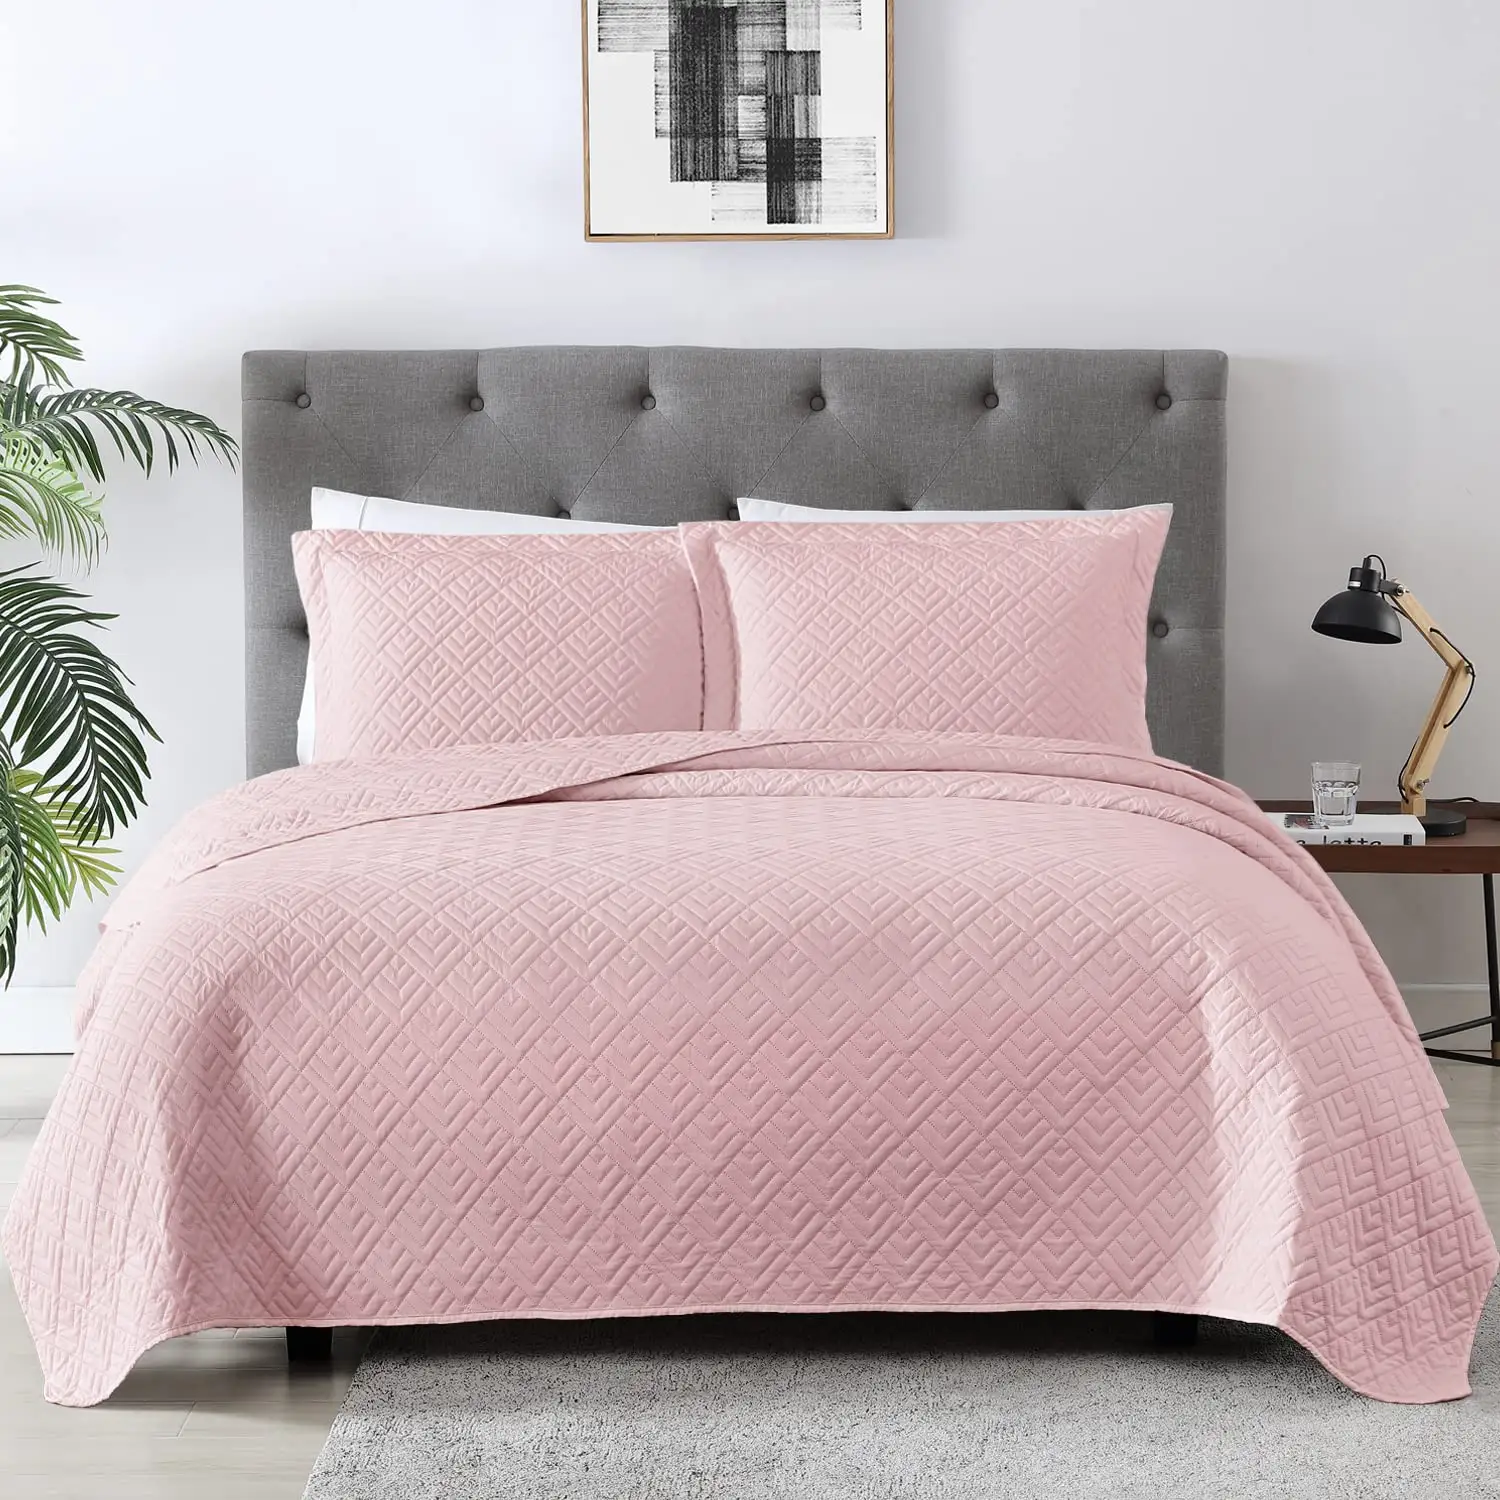 Ropa de cama elegante para verano, colchas y Cubiertas Cuadradas rosas, tamaño Queen, 3 piezas, venta al por mayor